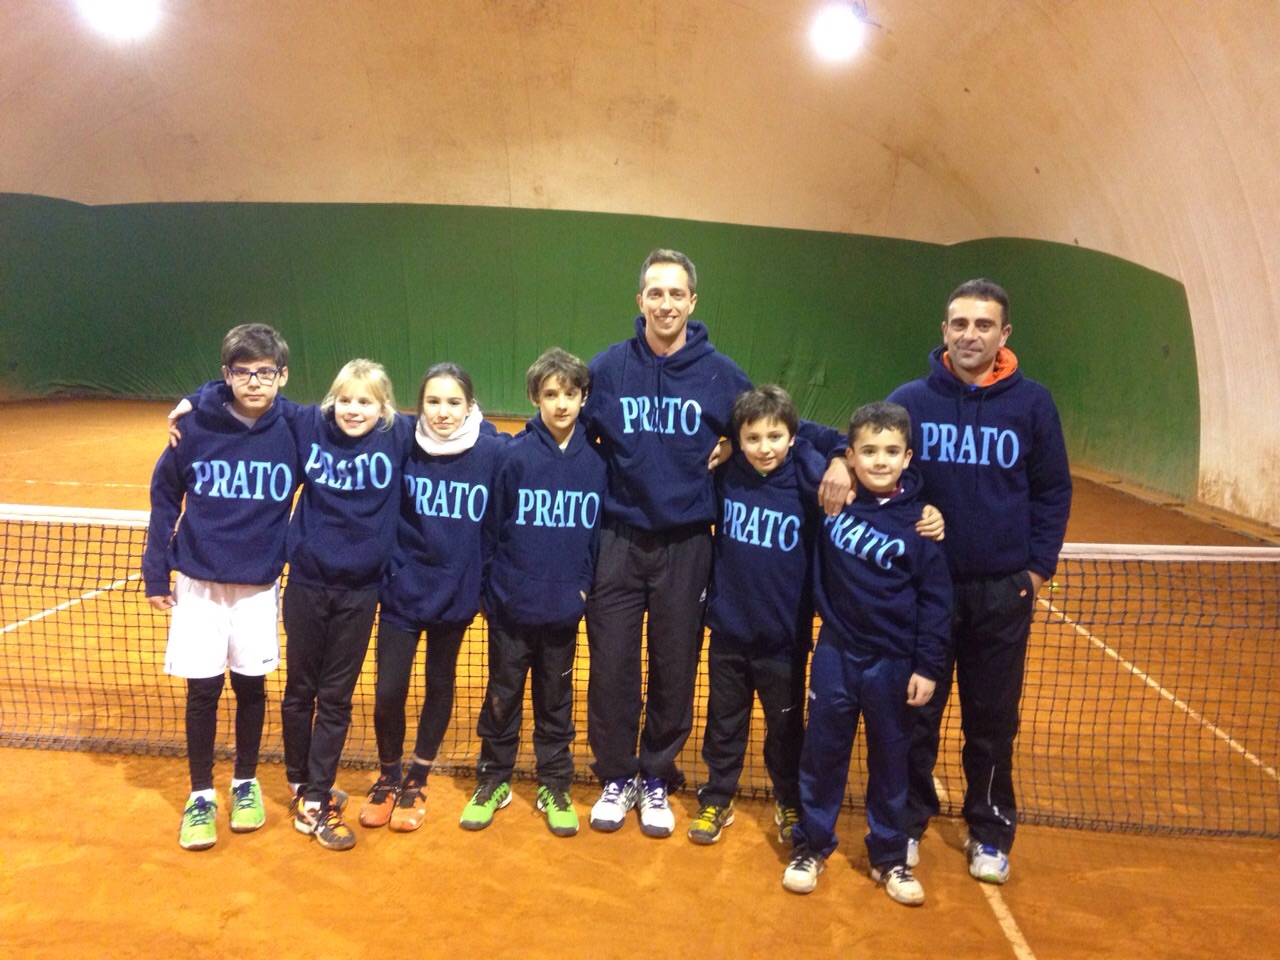 Prato tennis